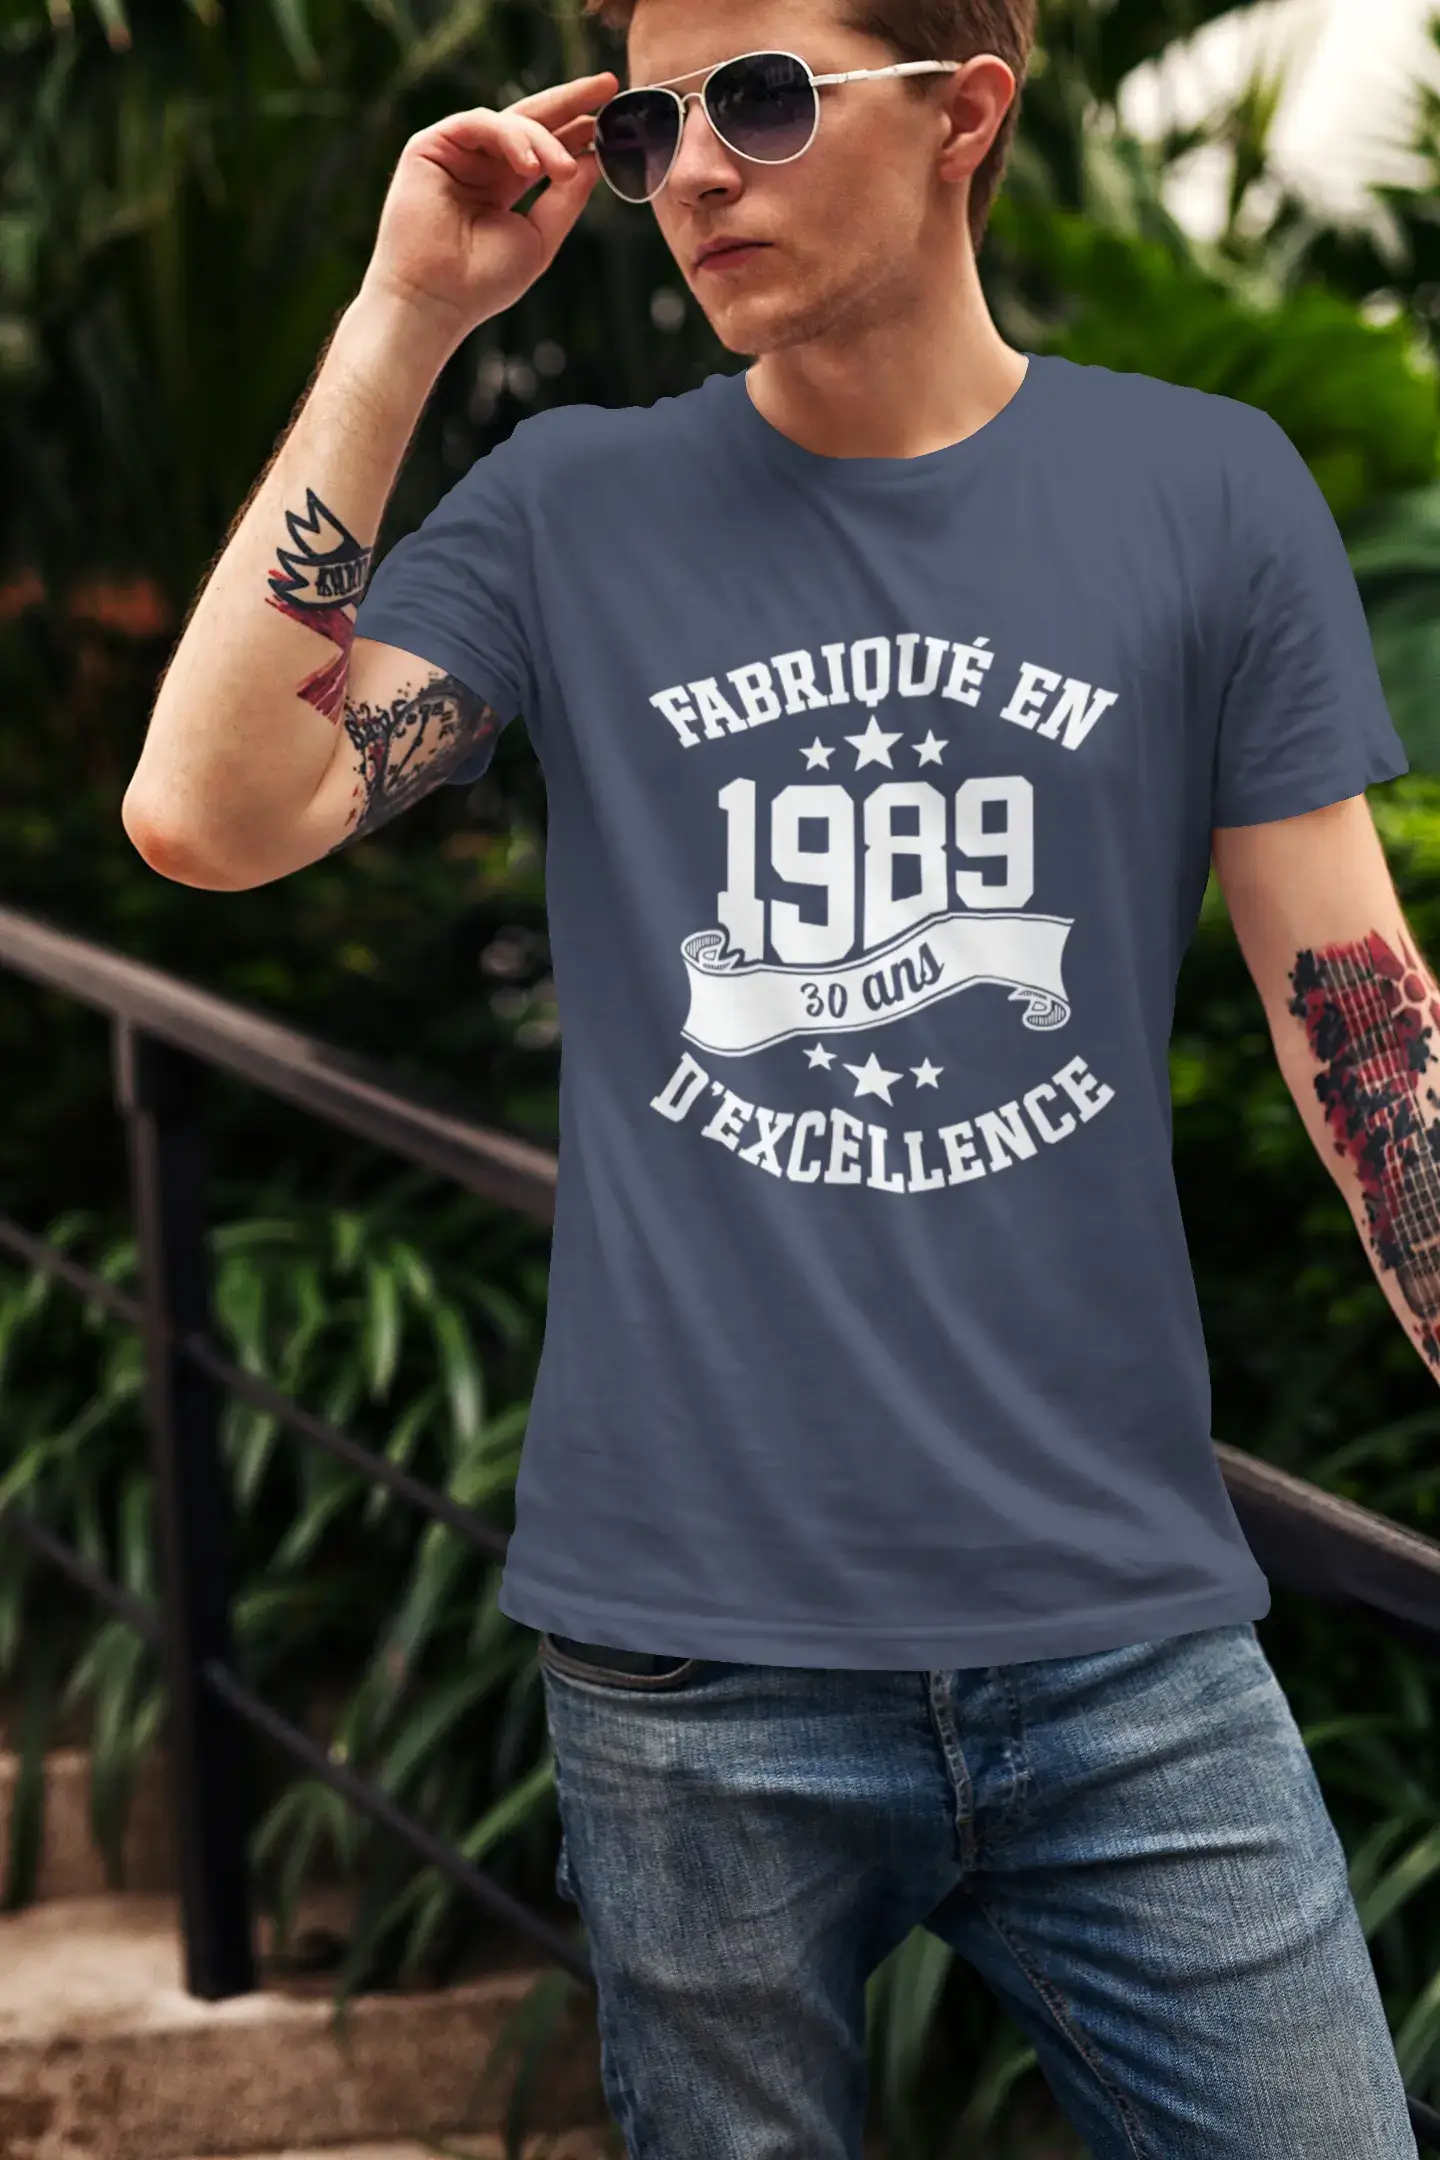 ULTRABASIC – Hergestellt im Jahr 1989, 30 Jahre alt. Geniales Unisex-T-Shirt Marine